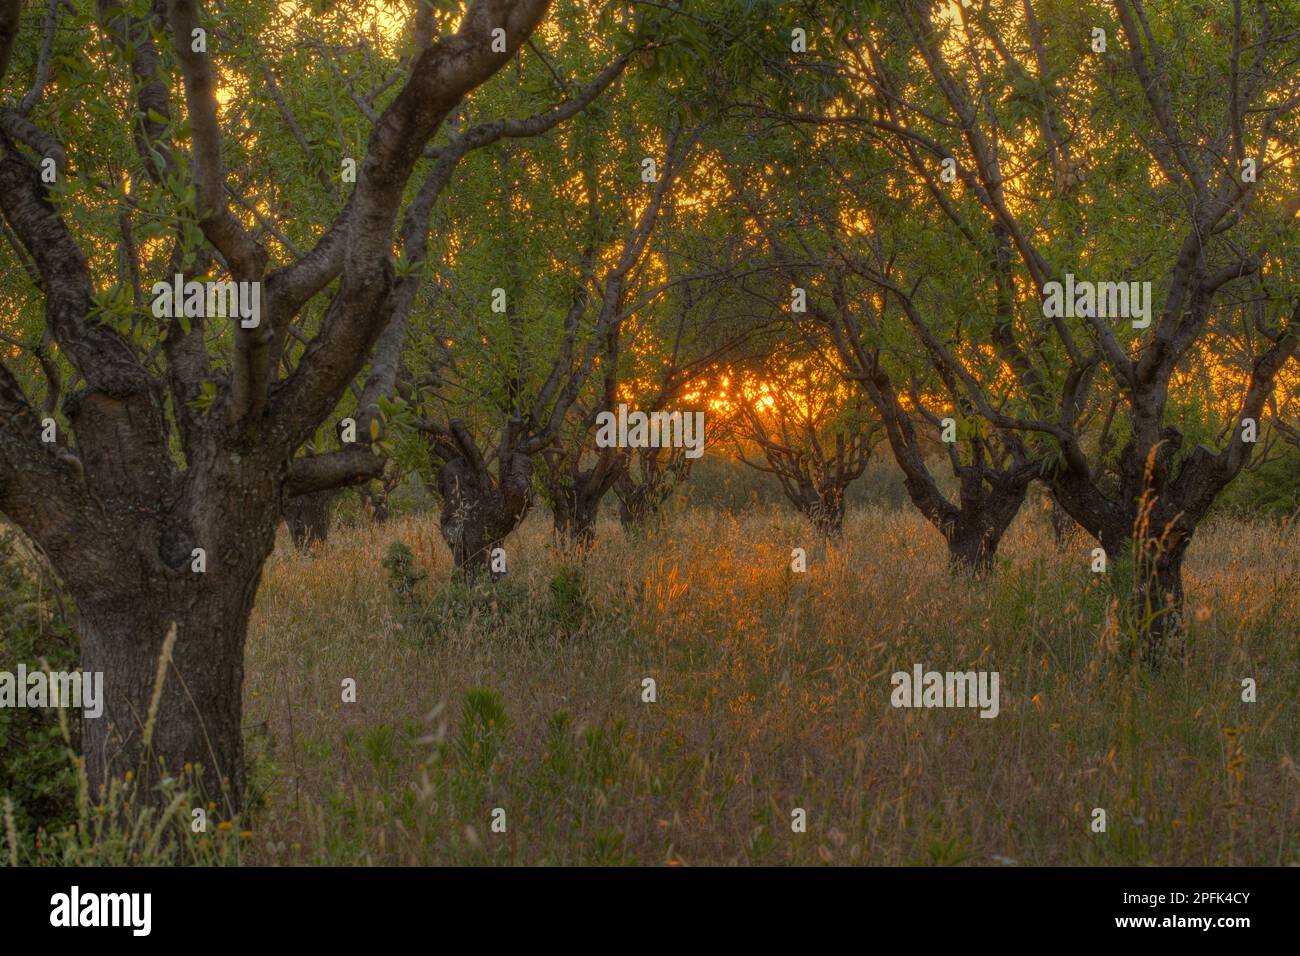 Verger d'amandiers (Prunus dulcis), au coucher du soleil, Bouches-du-Rhône, Provence, France Banque D'Images